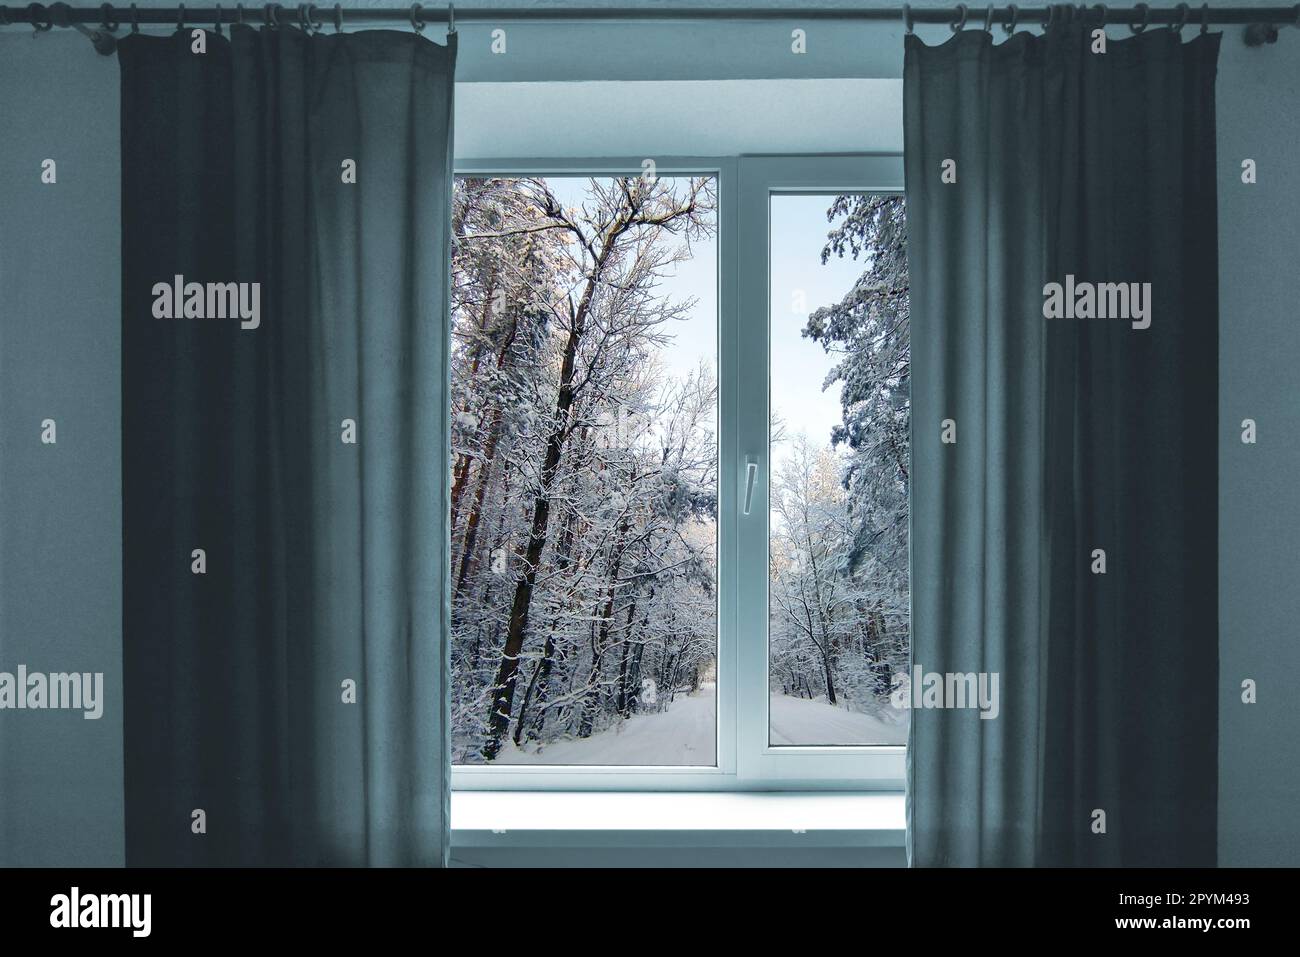 Fenster in einem Zimmer mit Blick auf die Winterlandschaft. Zimmer mit Fenster. Fenster mit grauen Vorhängen. Kaltes und verschneites Wetter vor dem Fenster. Stockfoto